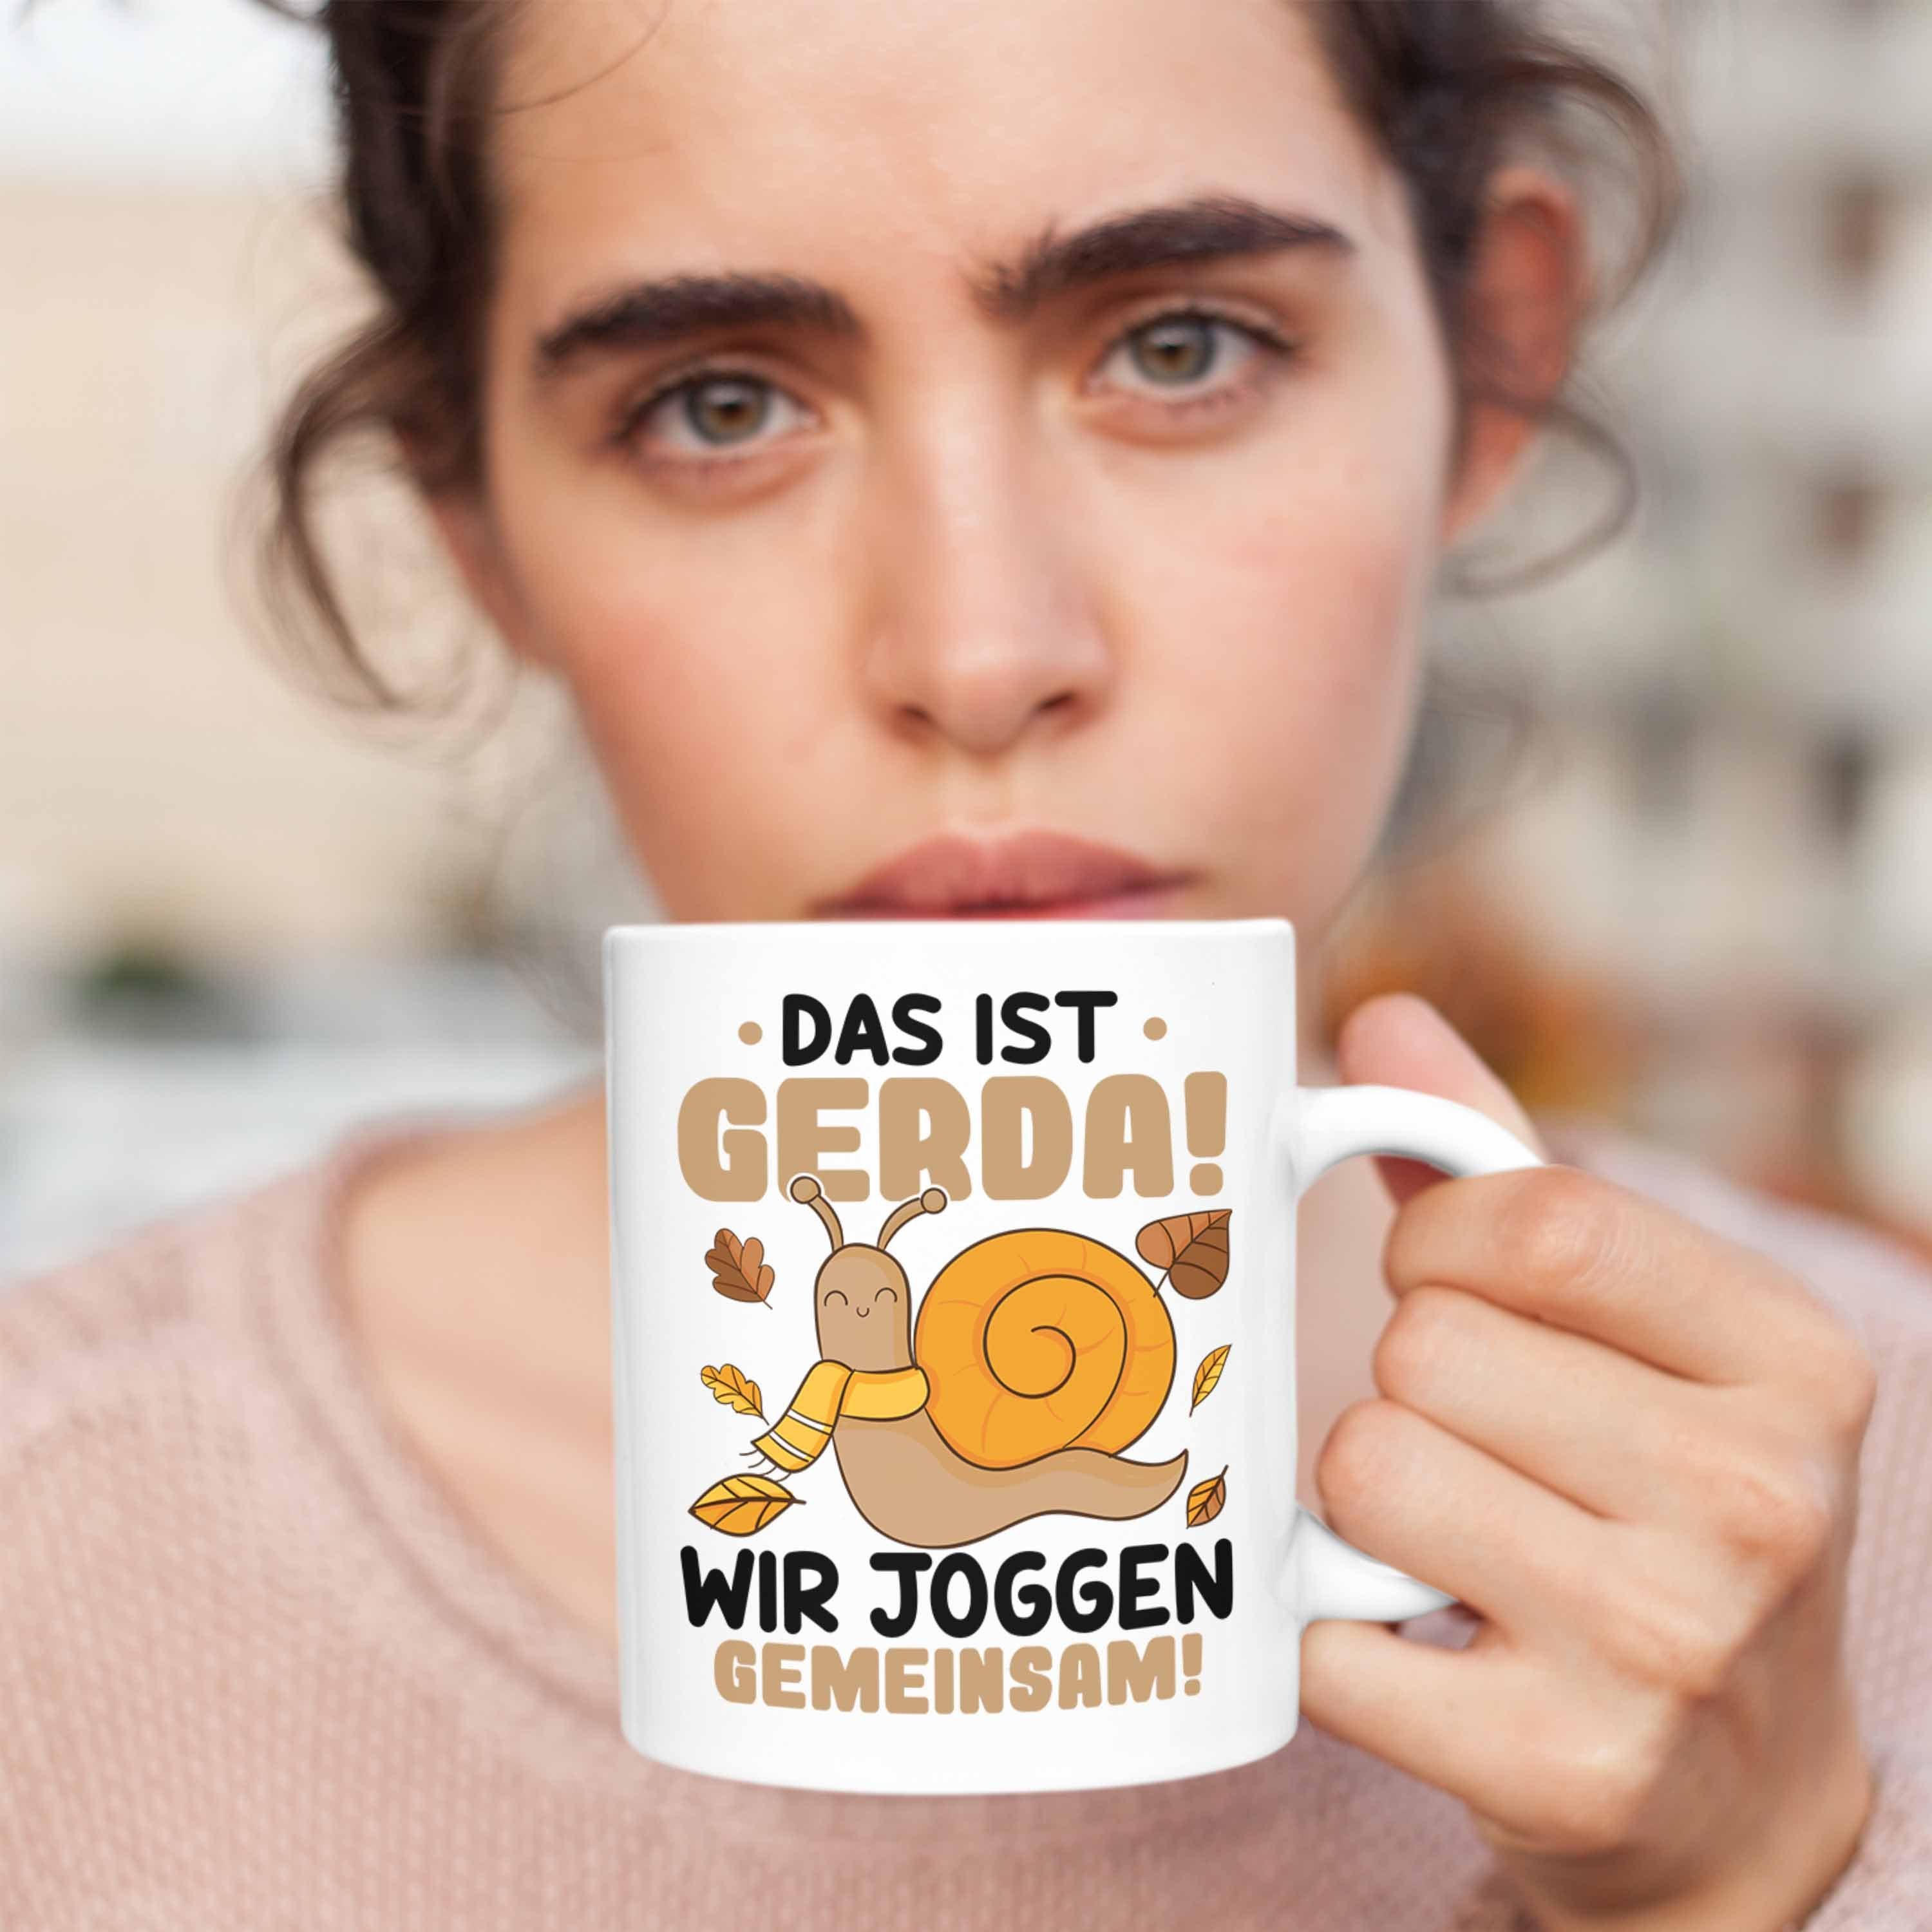 Gerda Jogger Wir Schnecke Lustiger Das Ist Joggen Spruch Tasse - Tasse Geschenk Trendation Trendation Gemeinsam Weiss